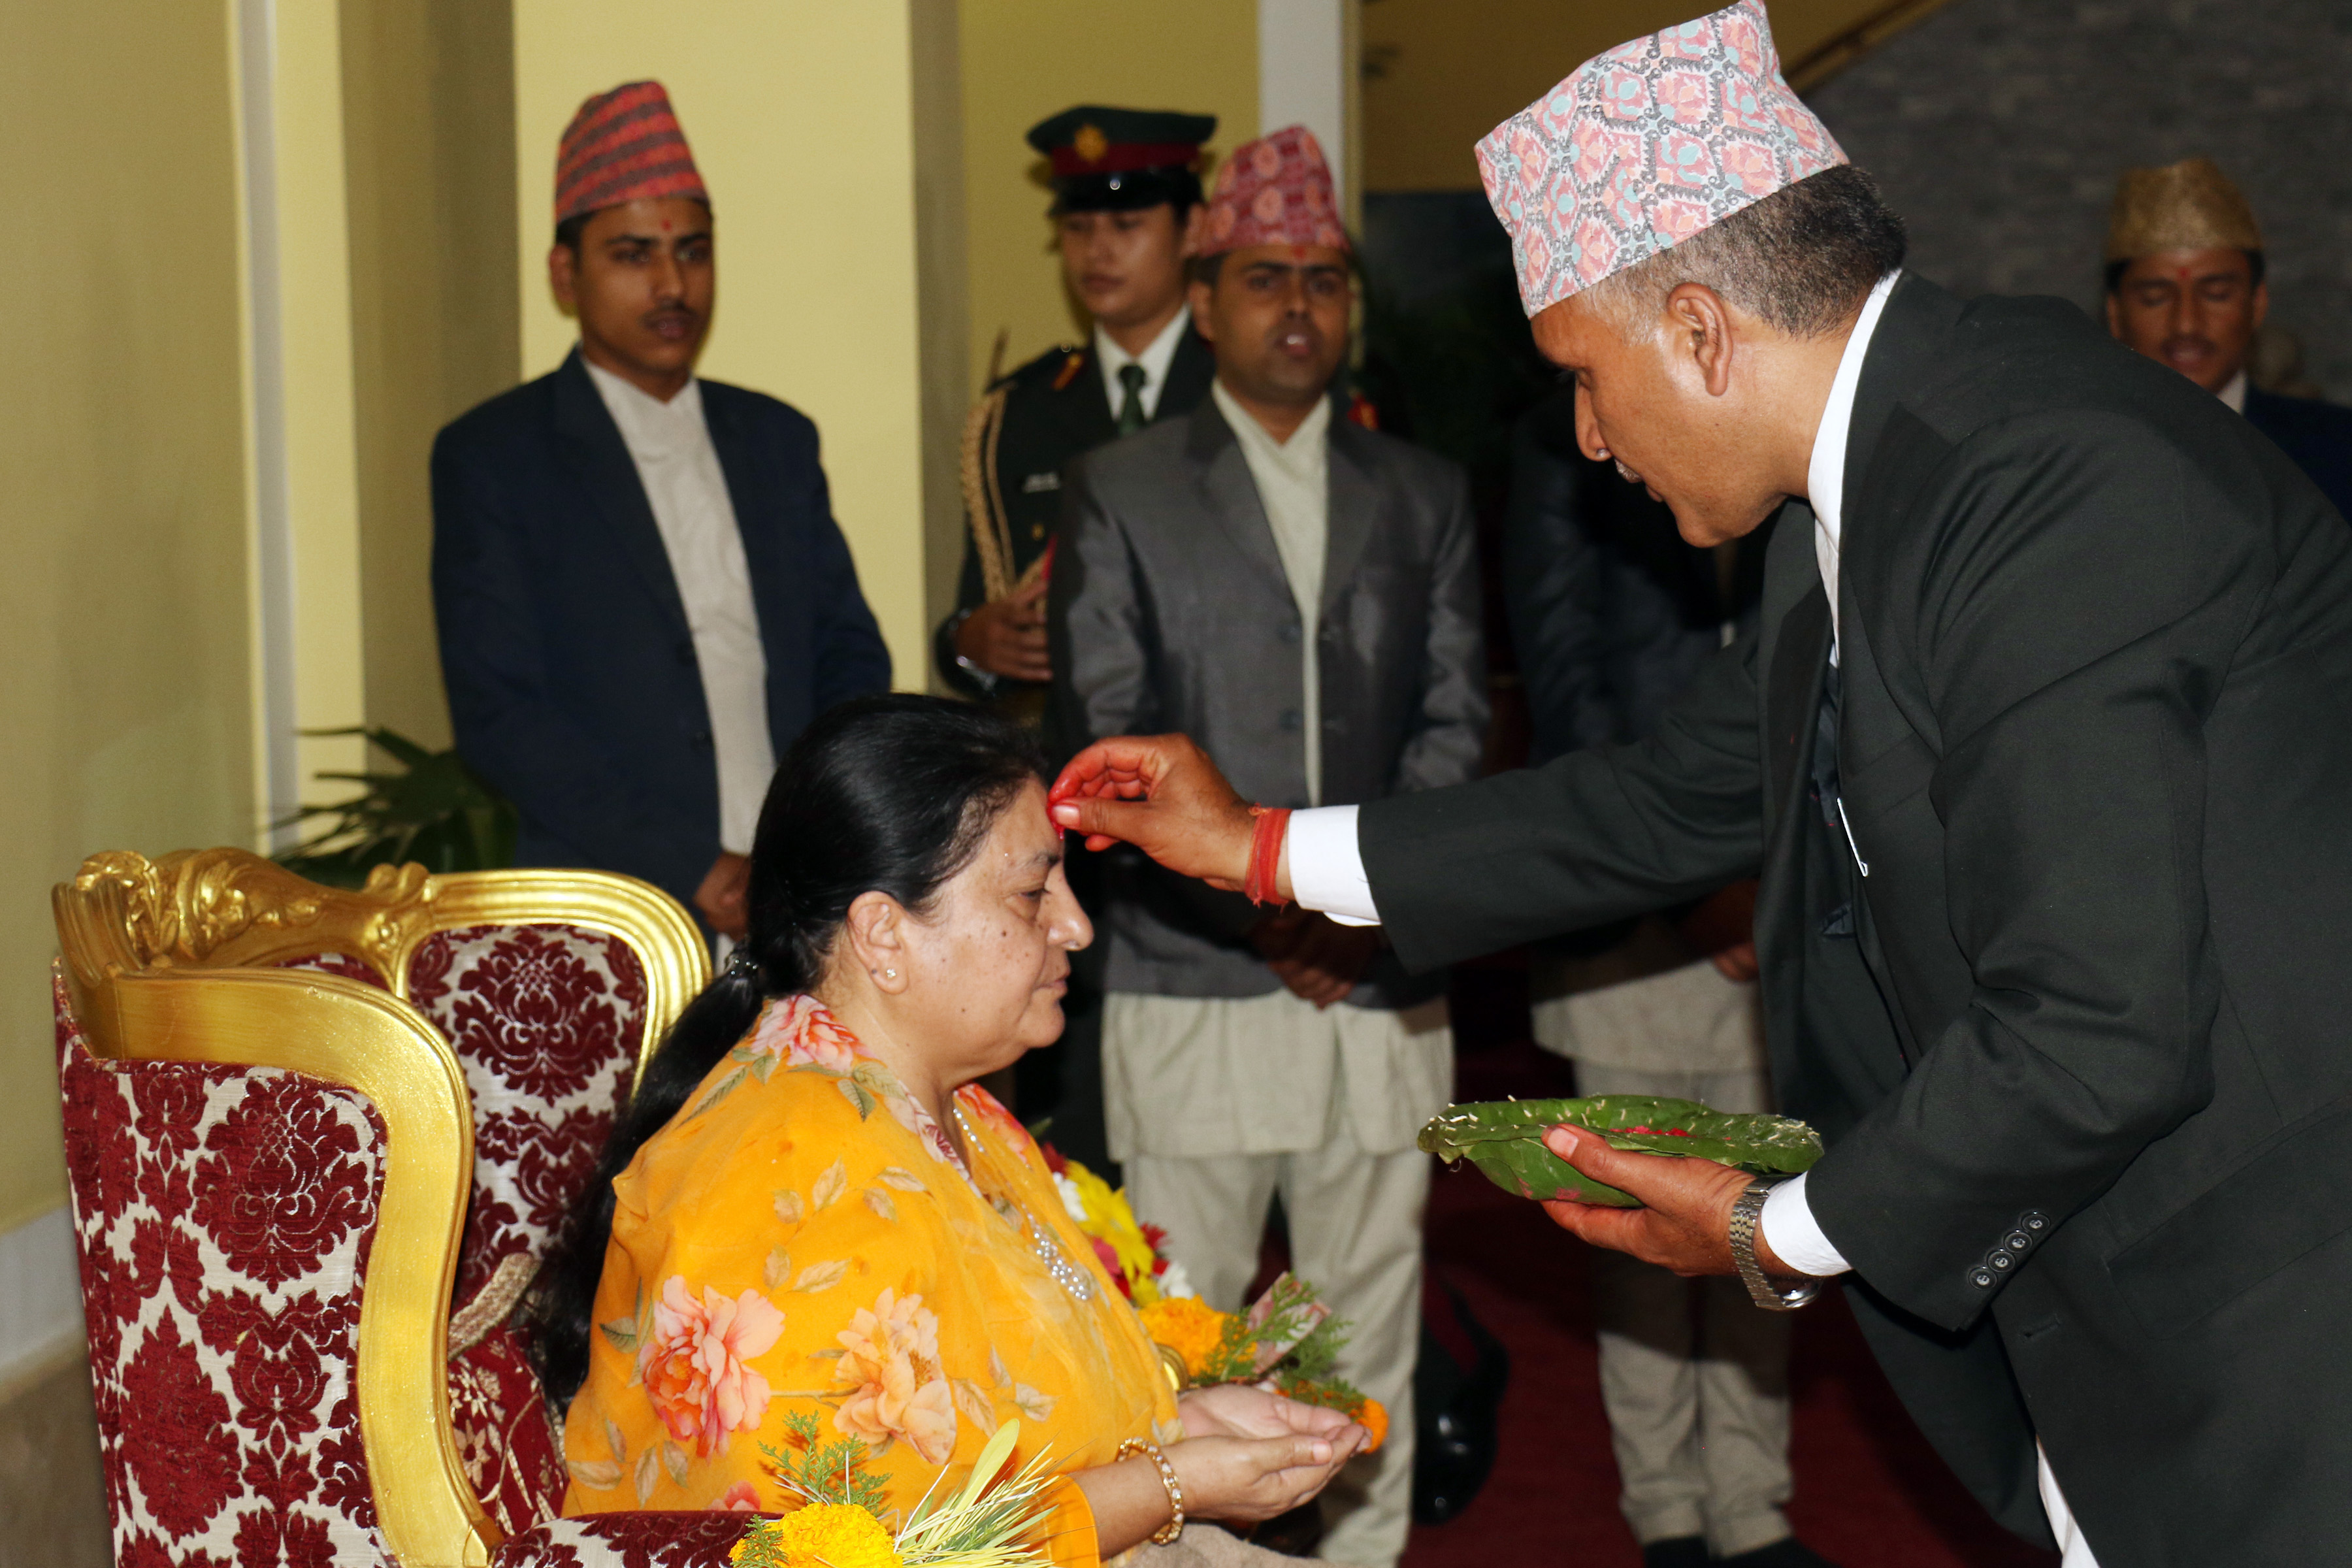 President receives Dashain tika